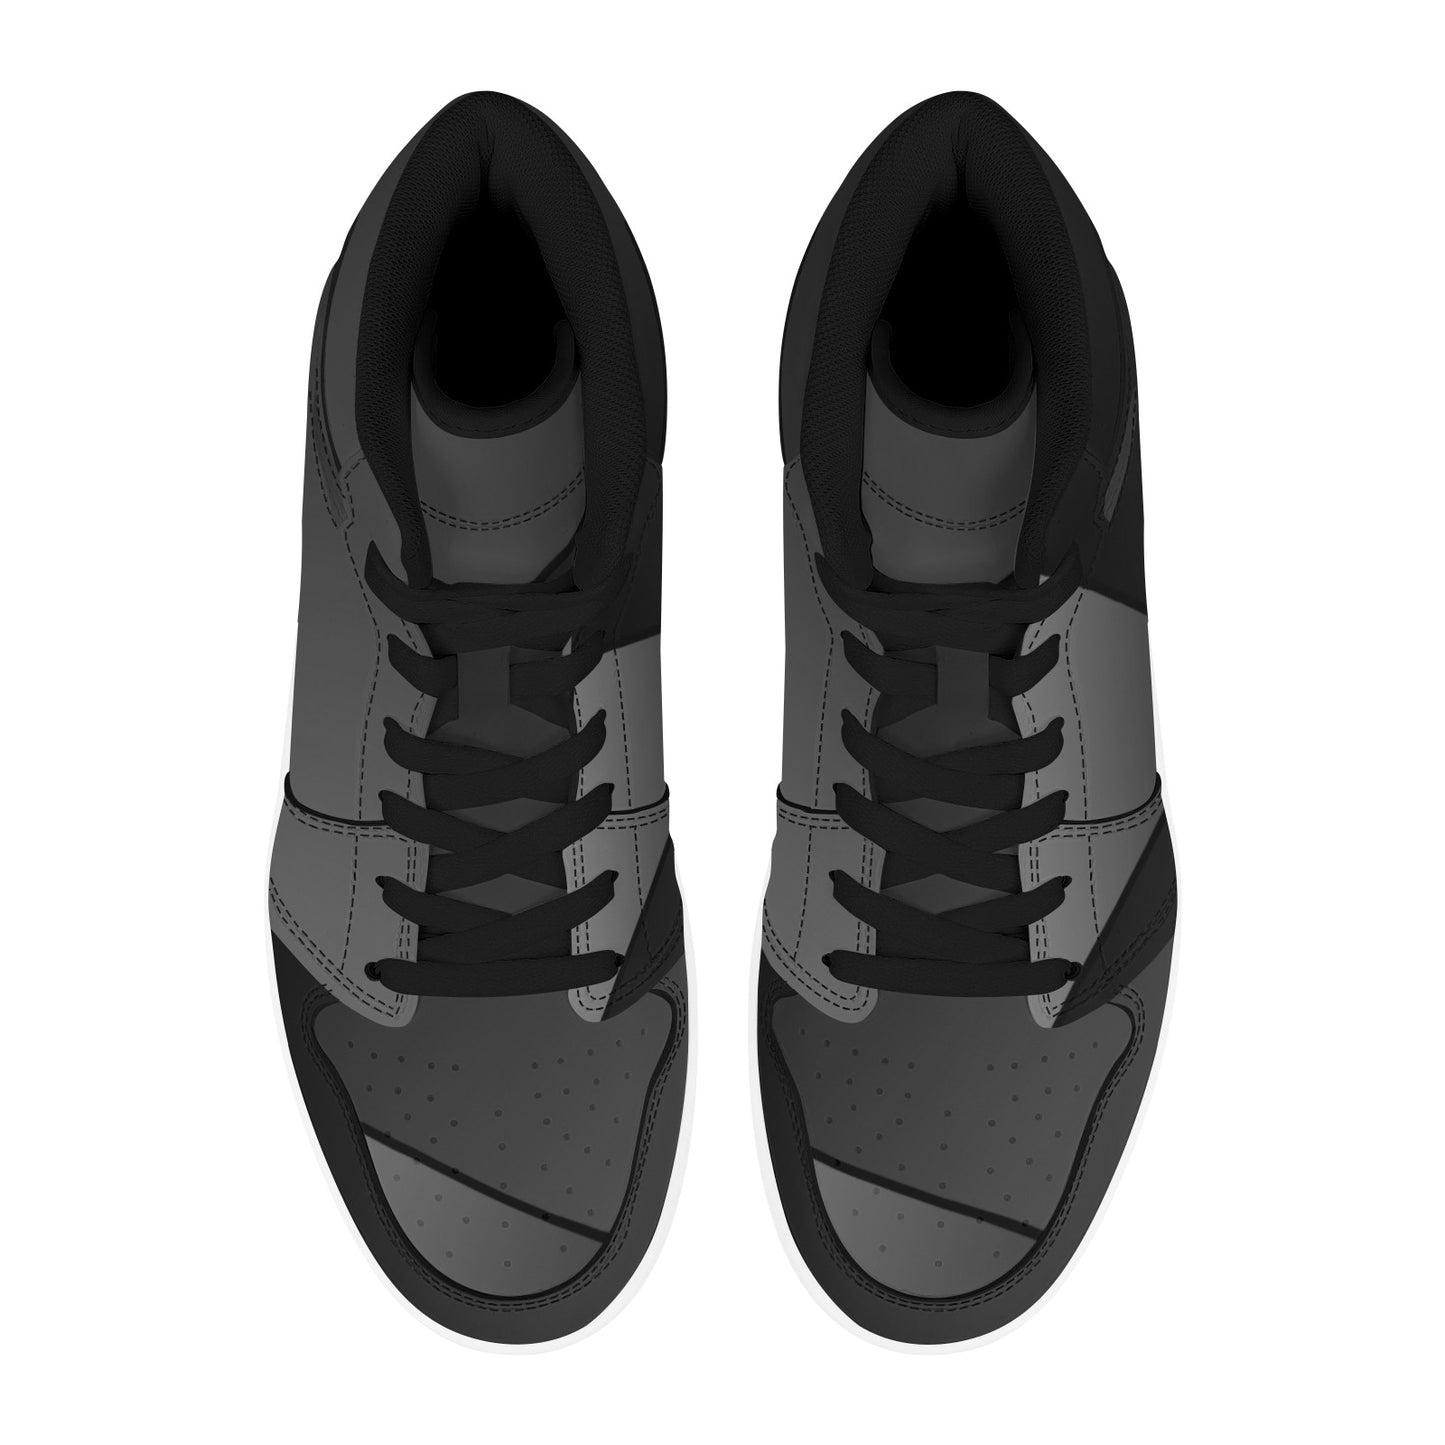 Black High Top Sneakers  Black Geometric Lines HIgh Top Sneakers Men's High Top Sneakers